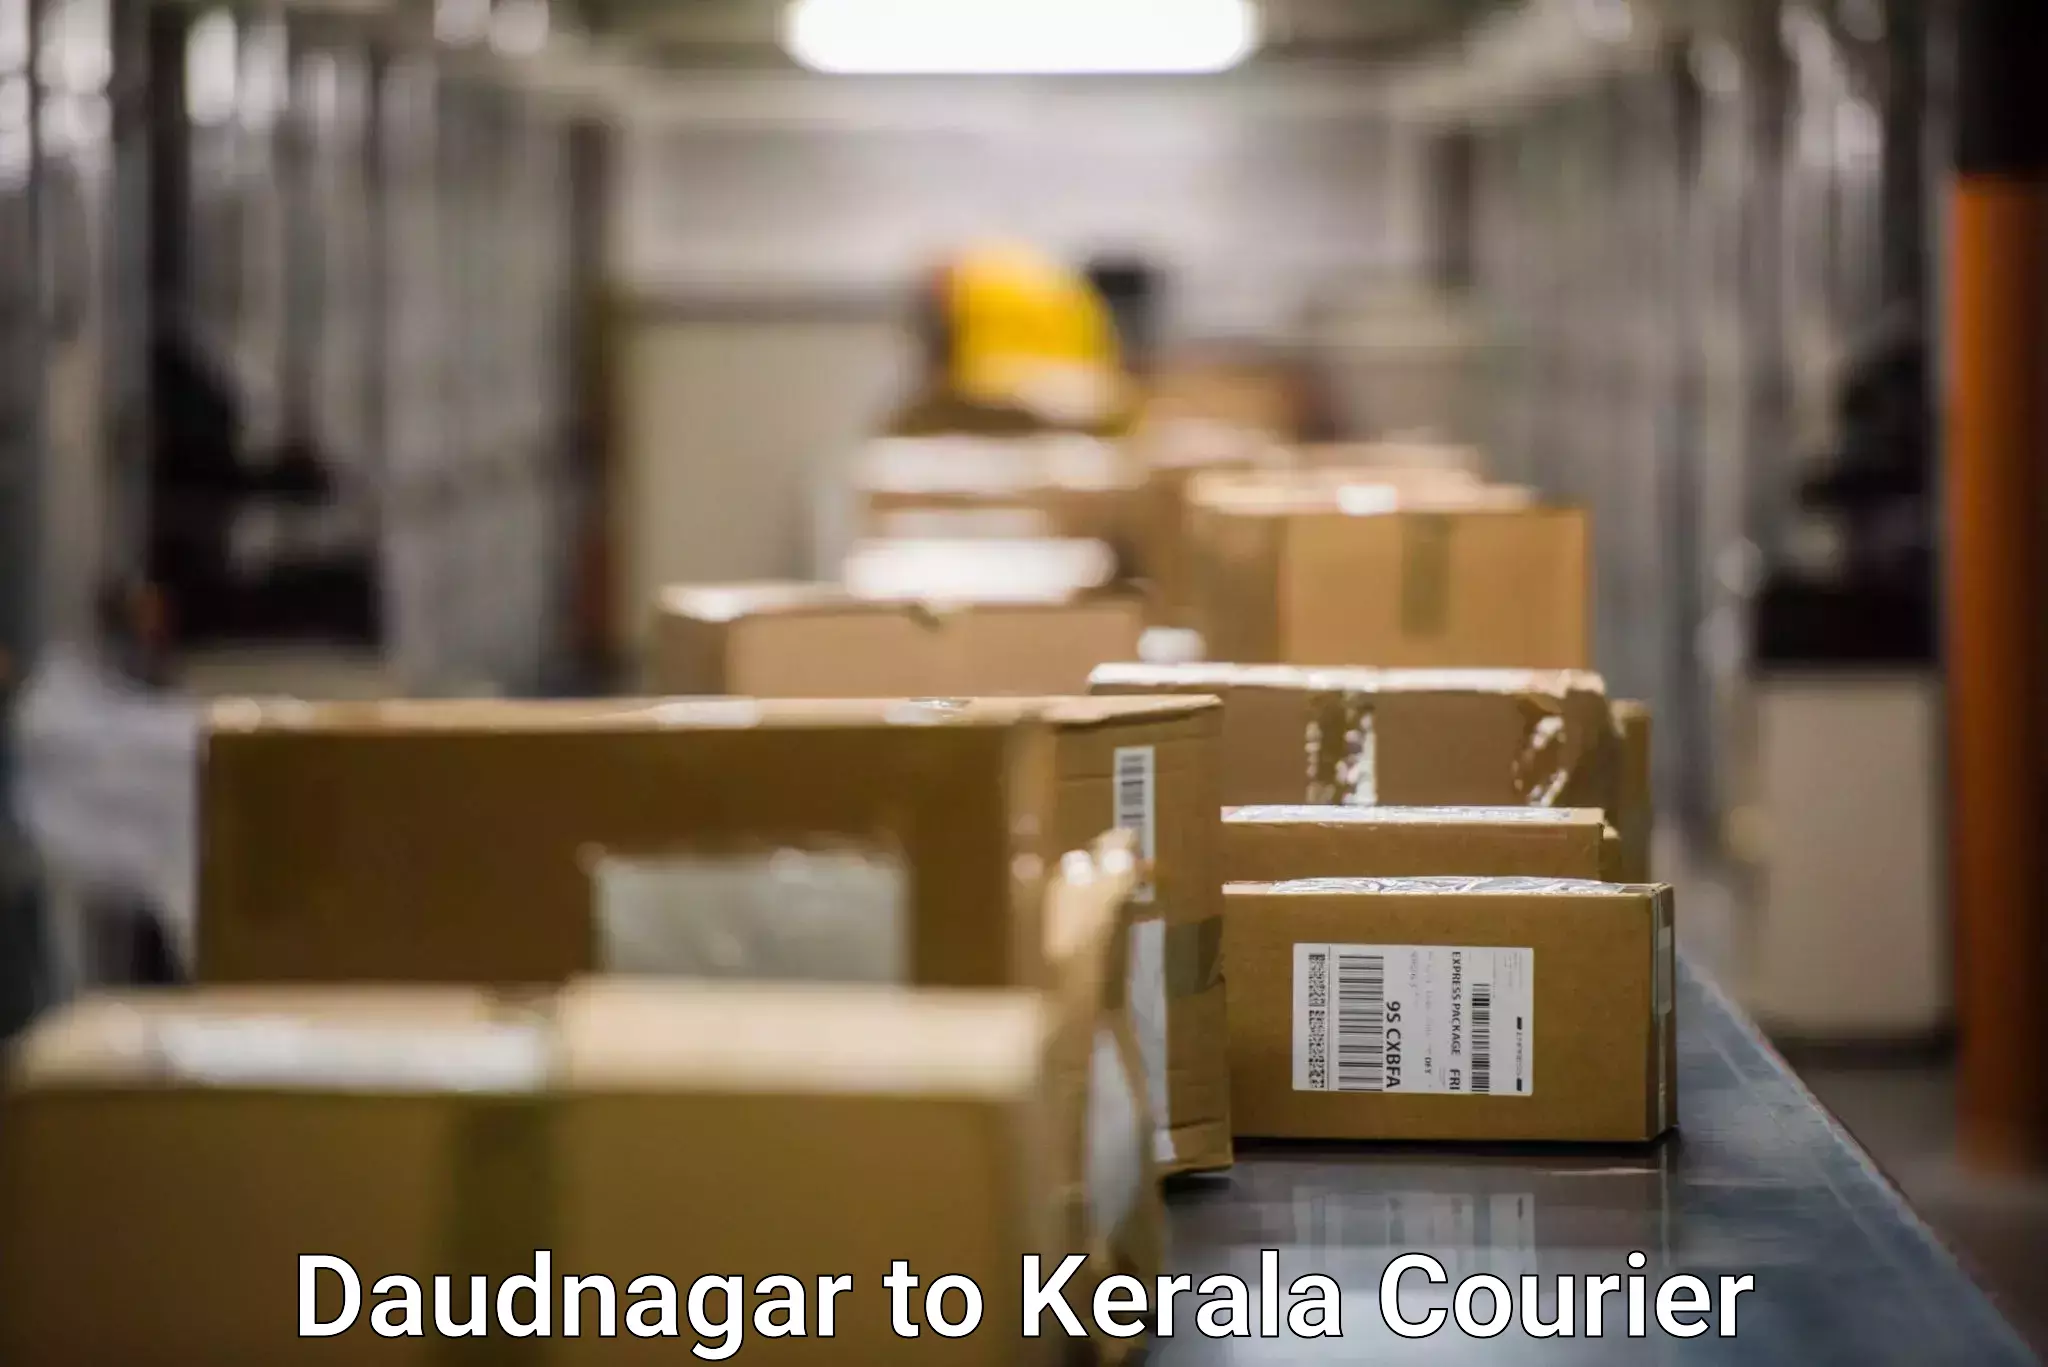 User-friendly courier app Daudnagar to Panayathamparamba